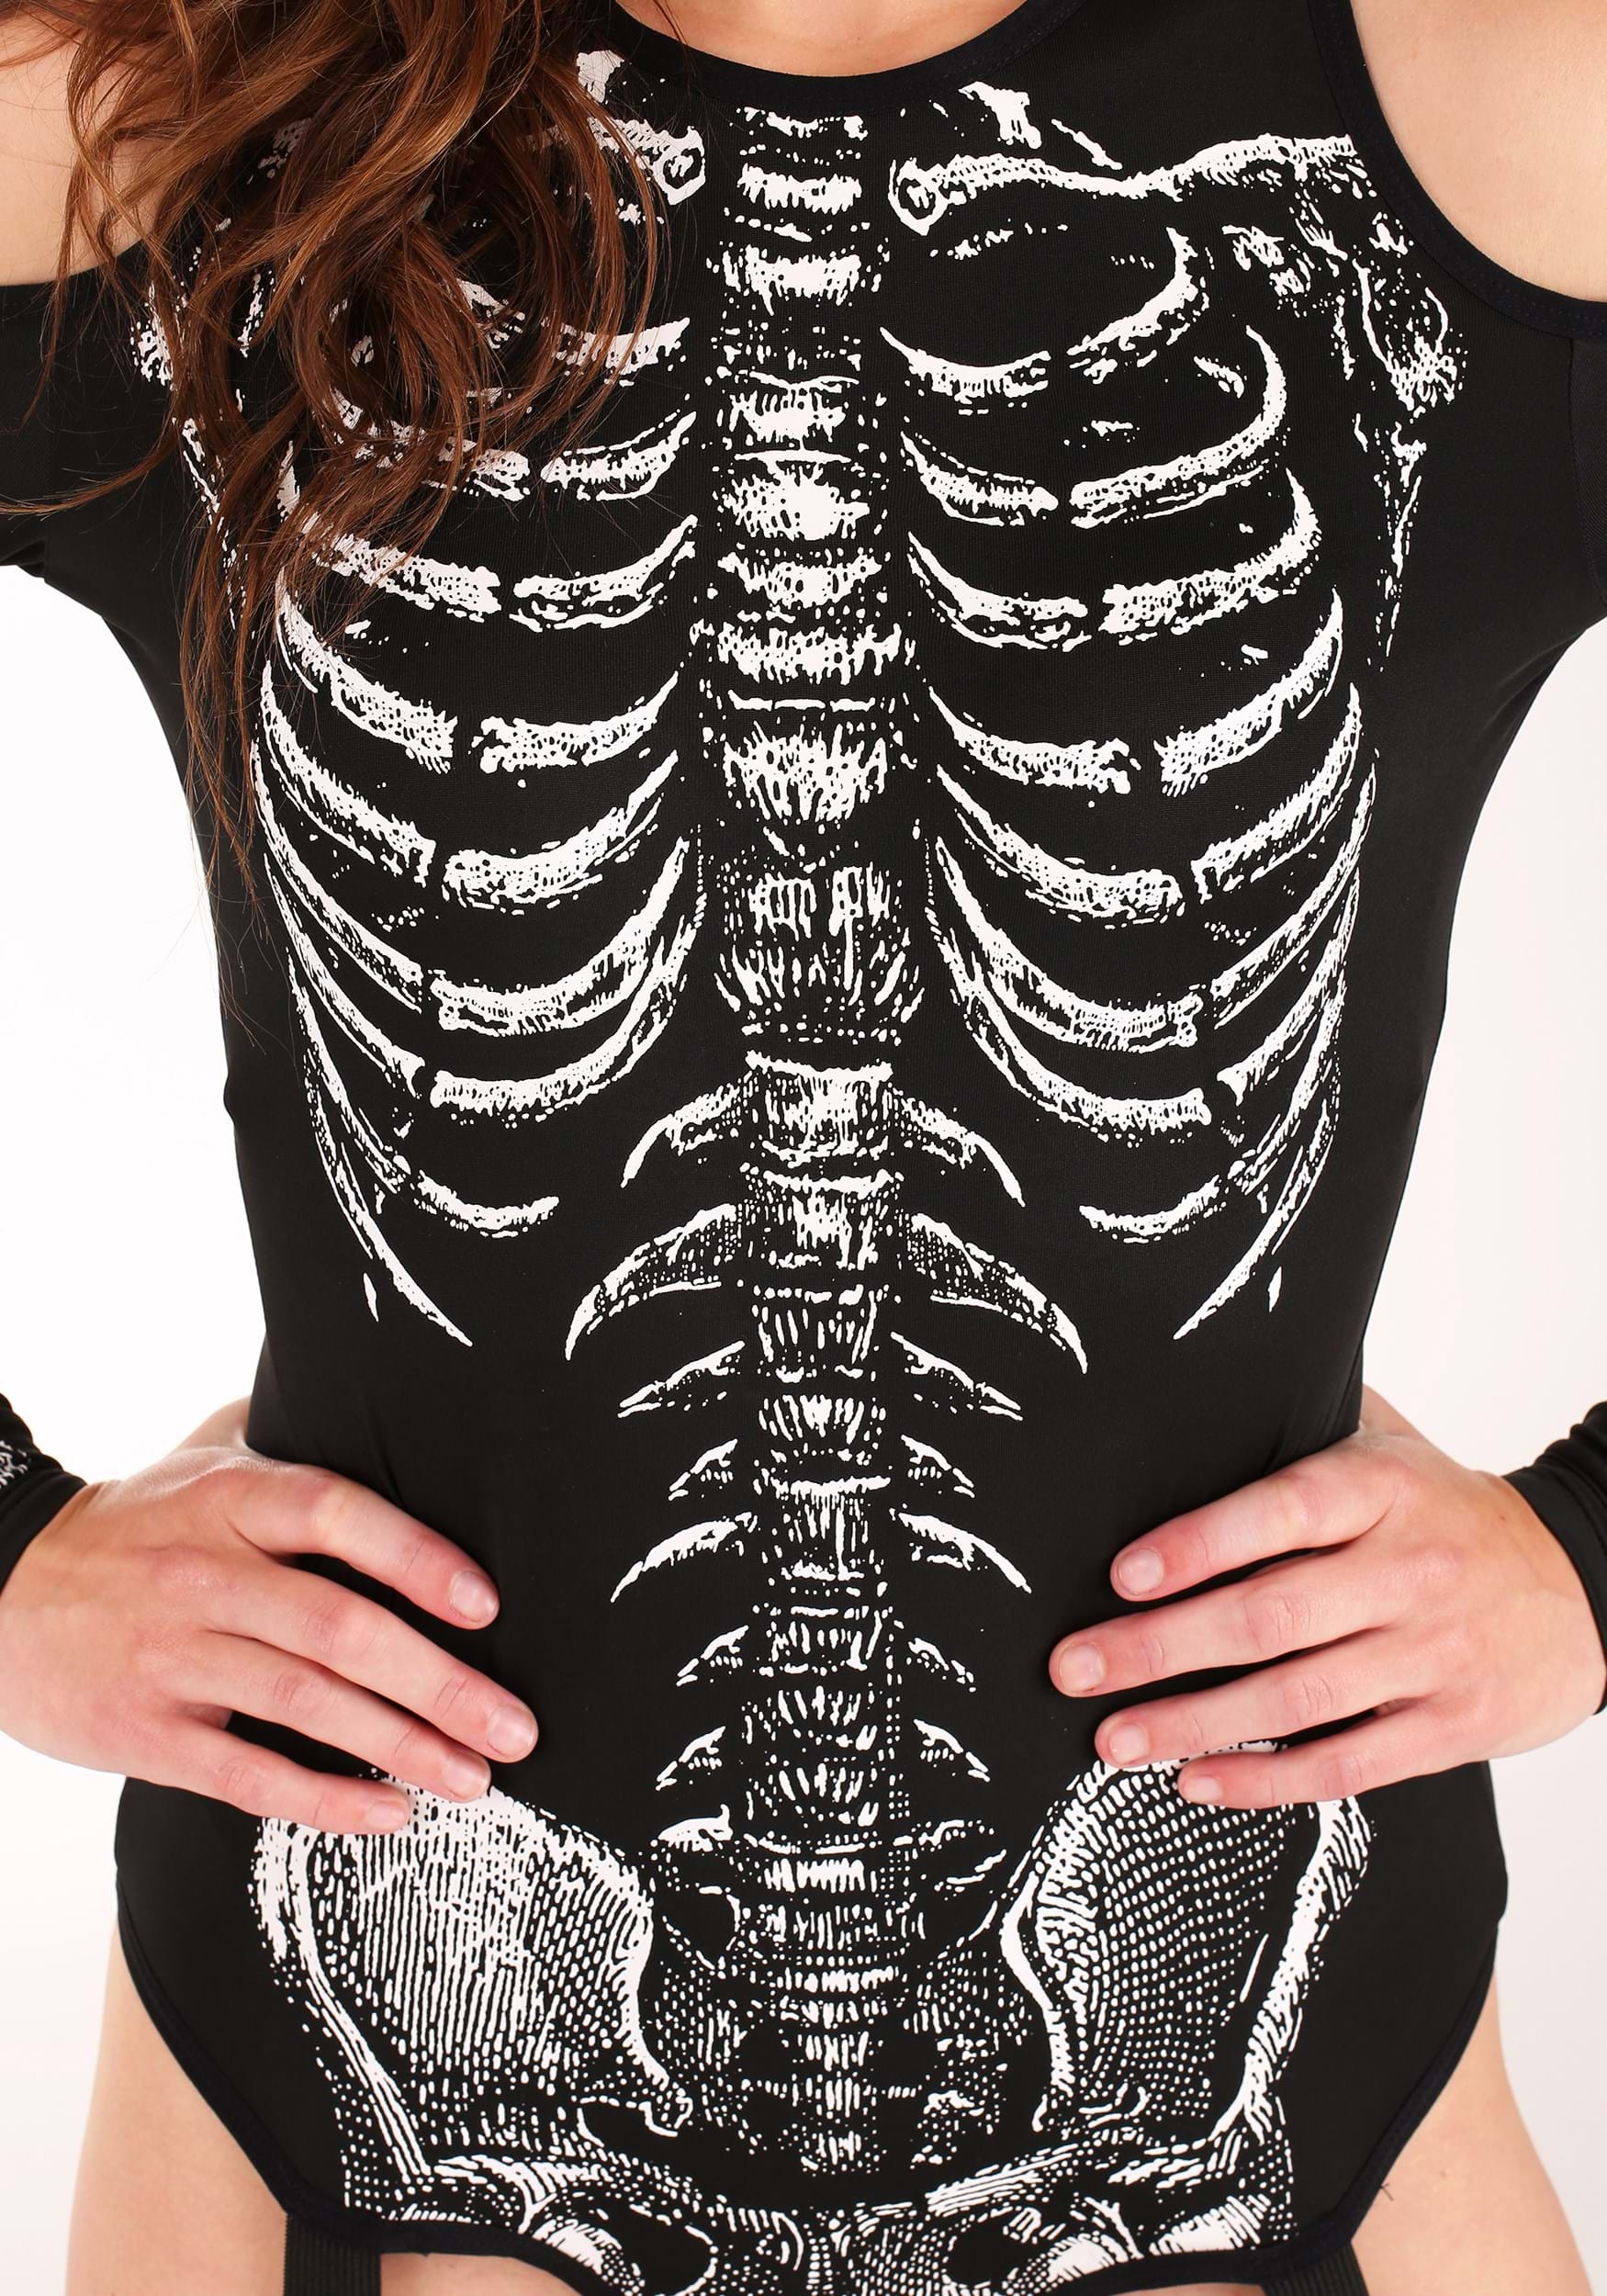 Women's Skeleton Bodysuit Fancy Dress Costume